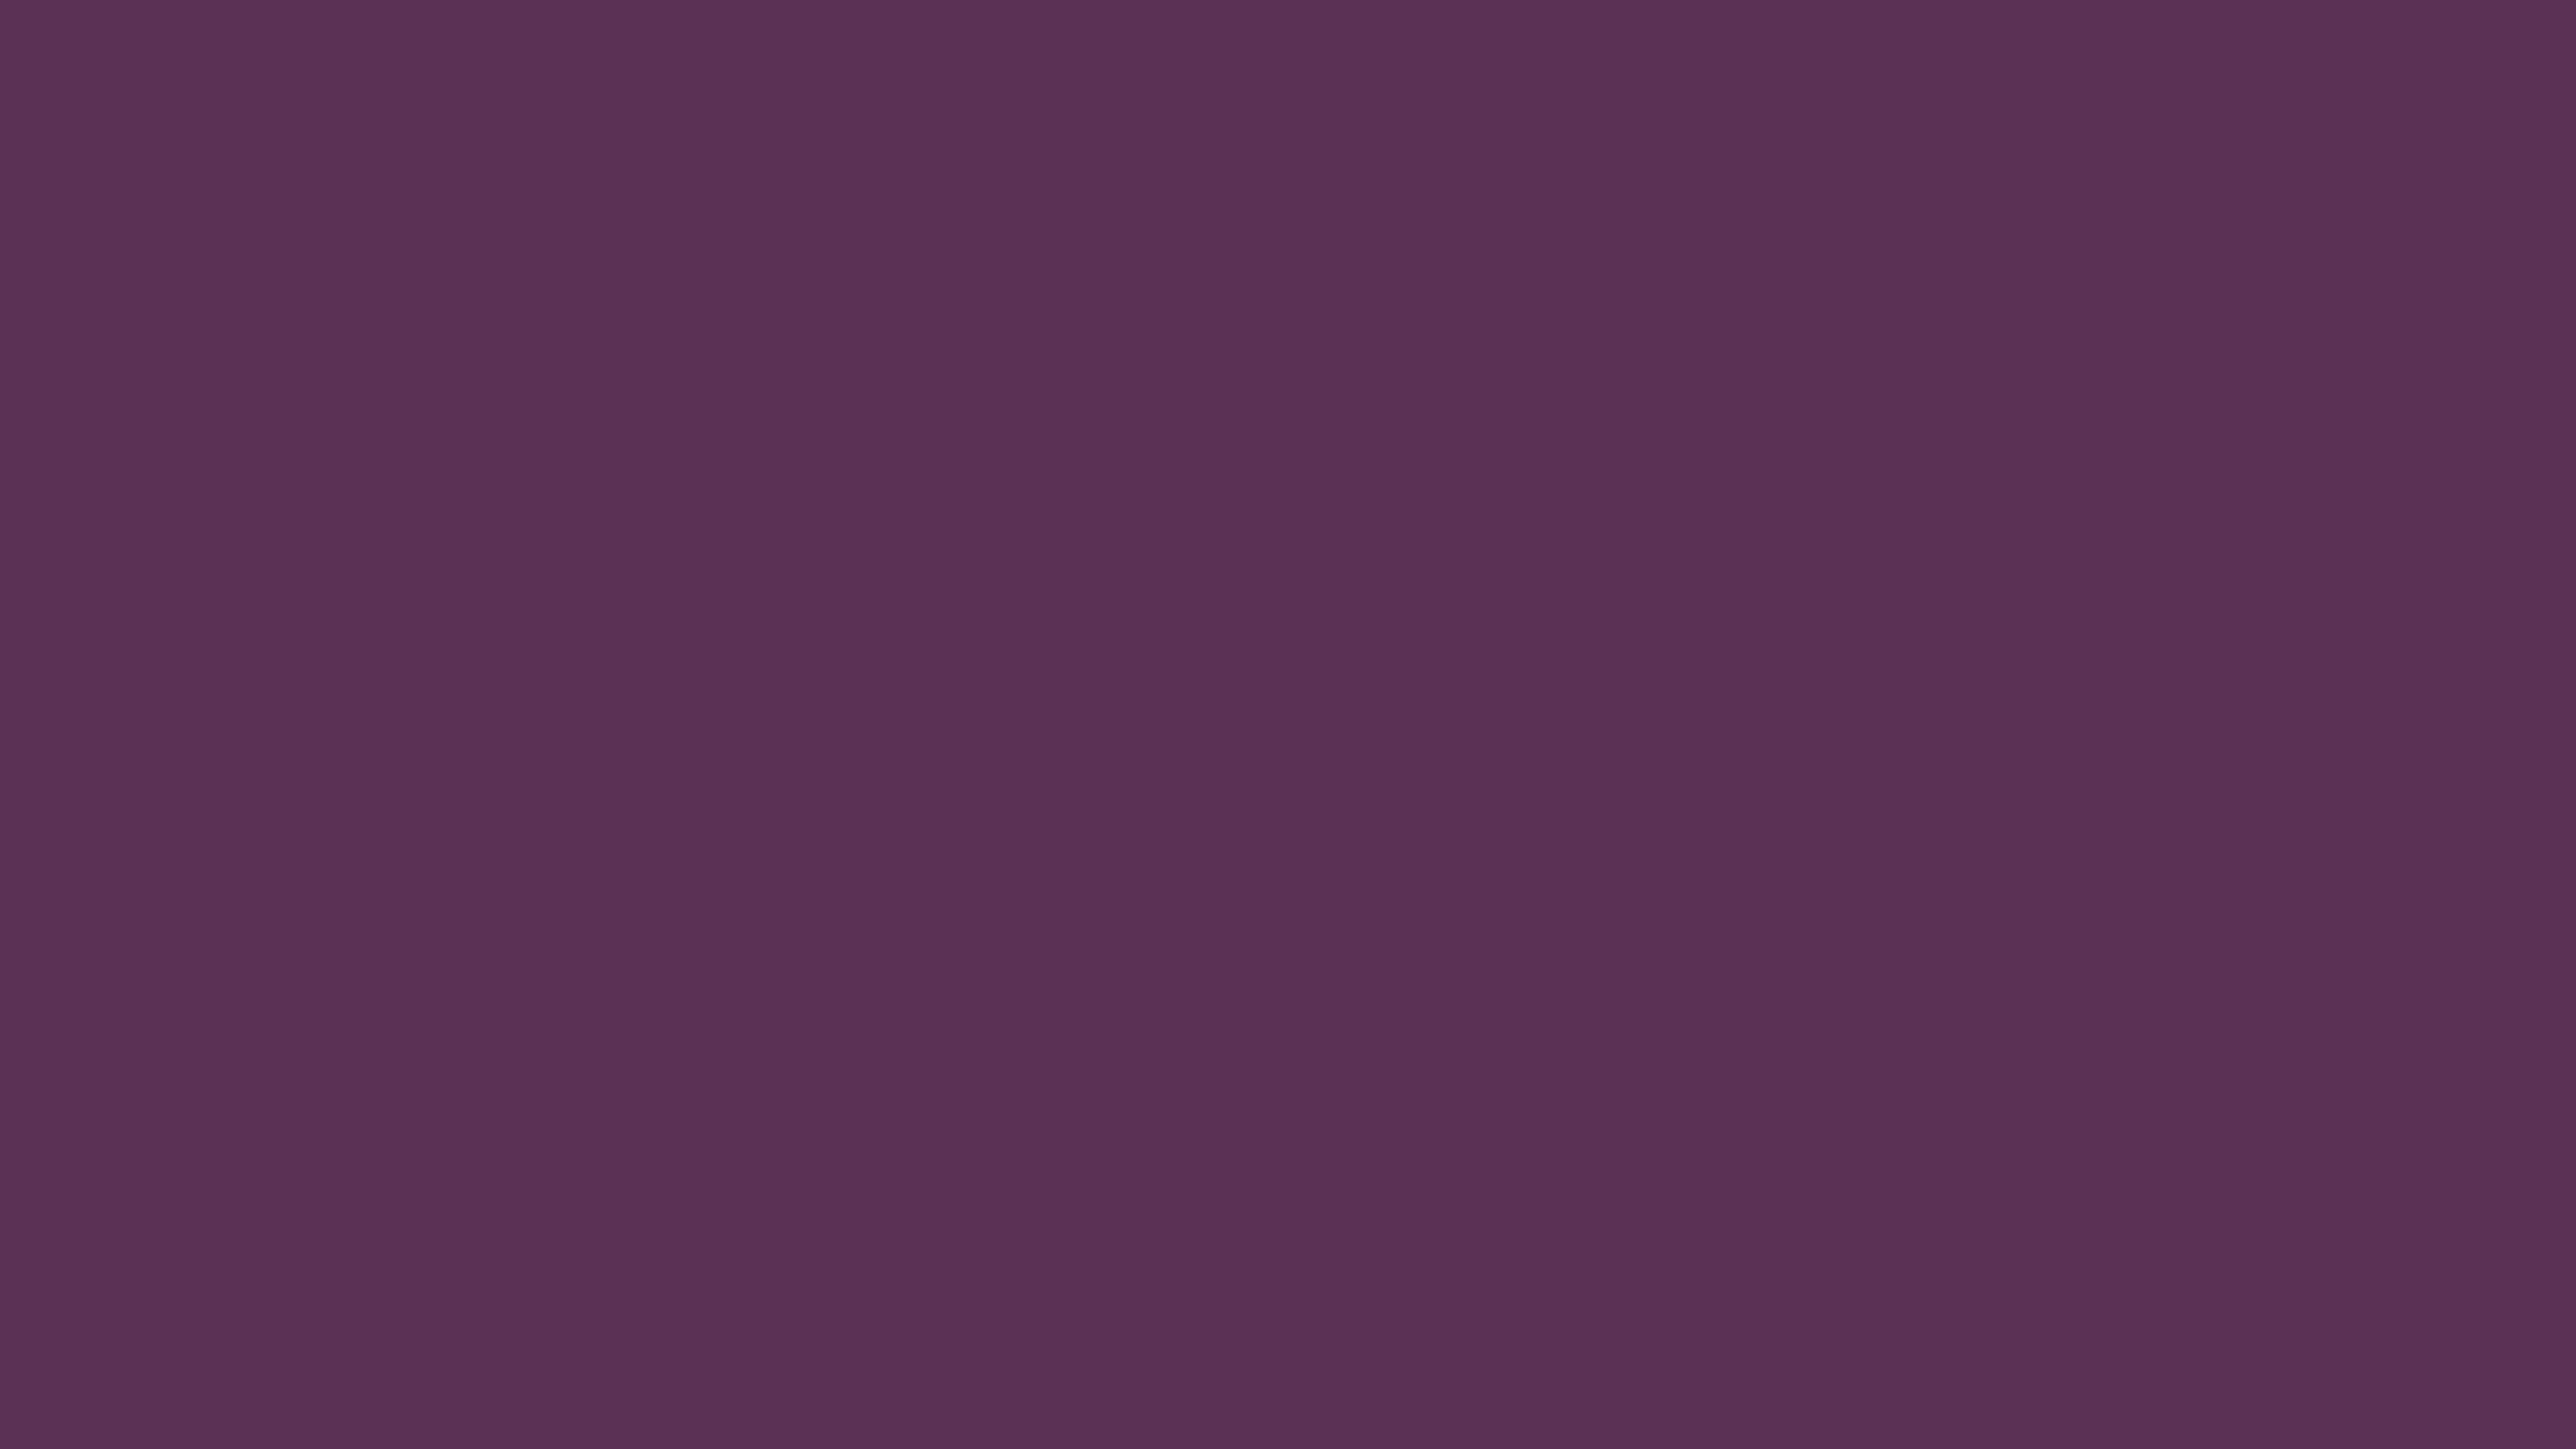 7680x4320 Japanese Violet Solid Color Background